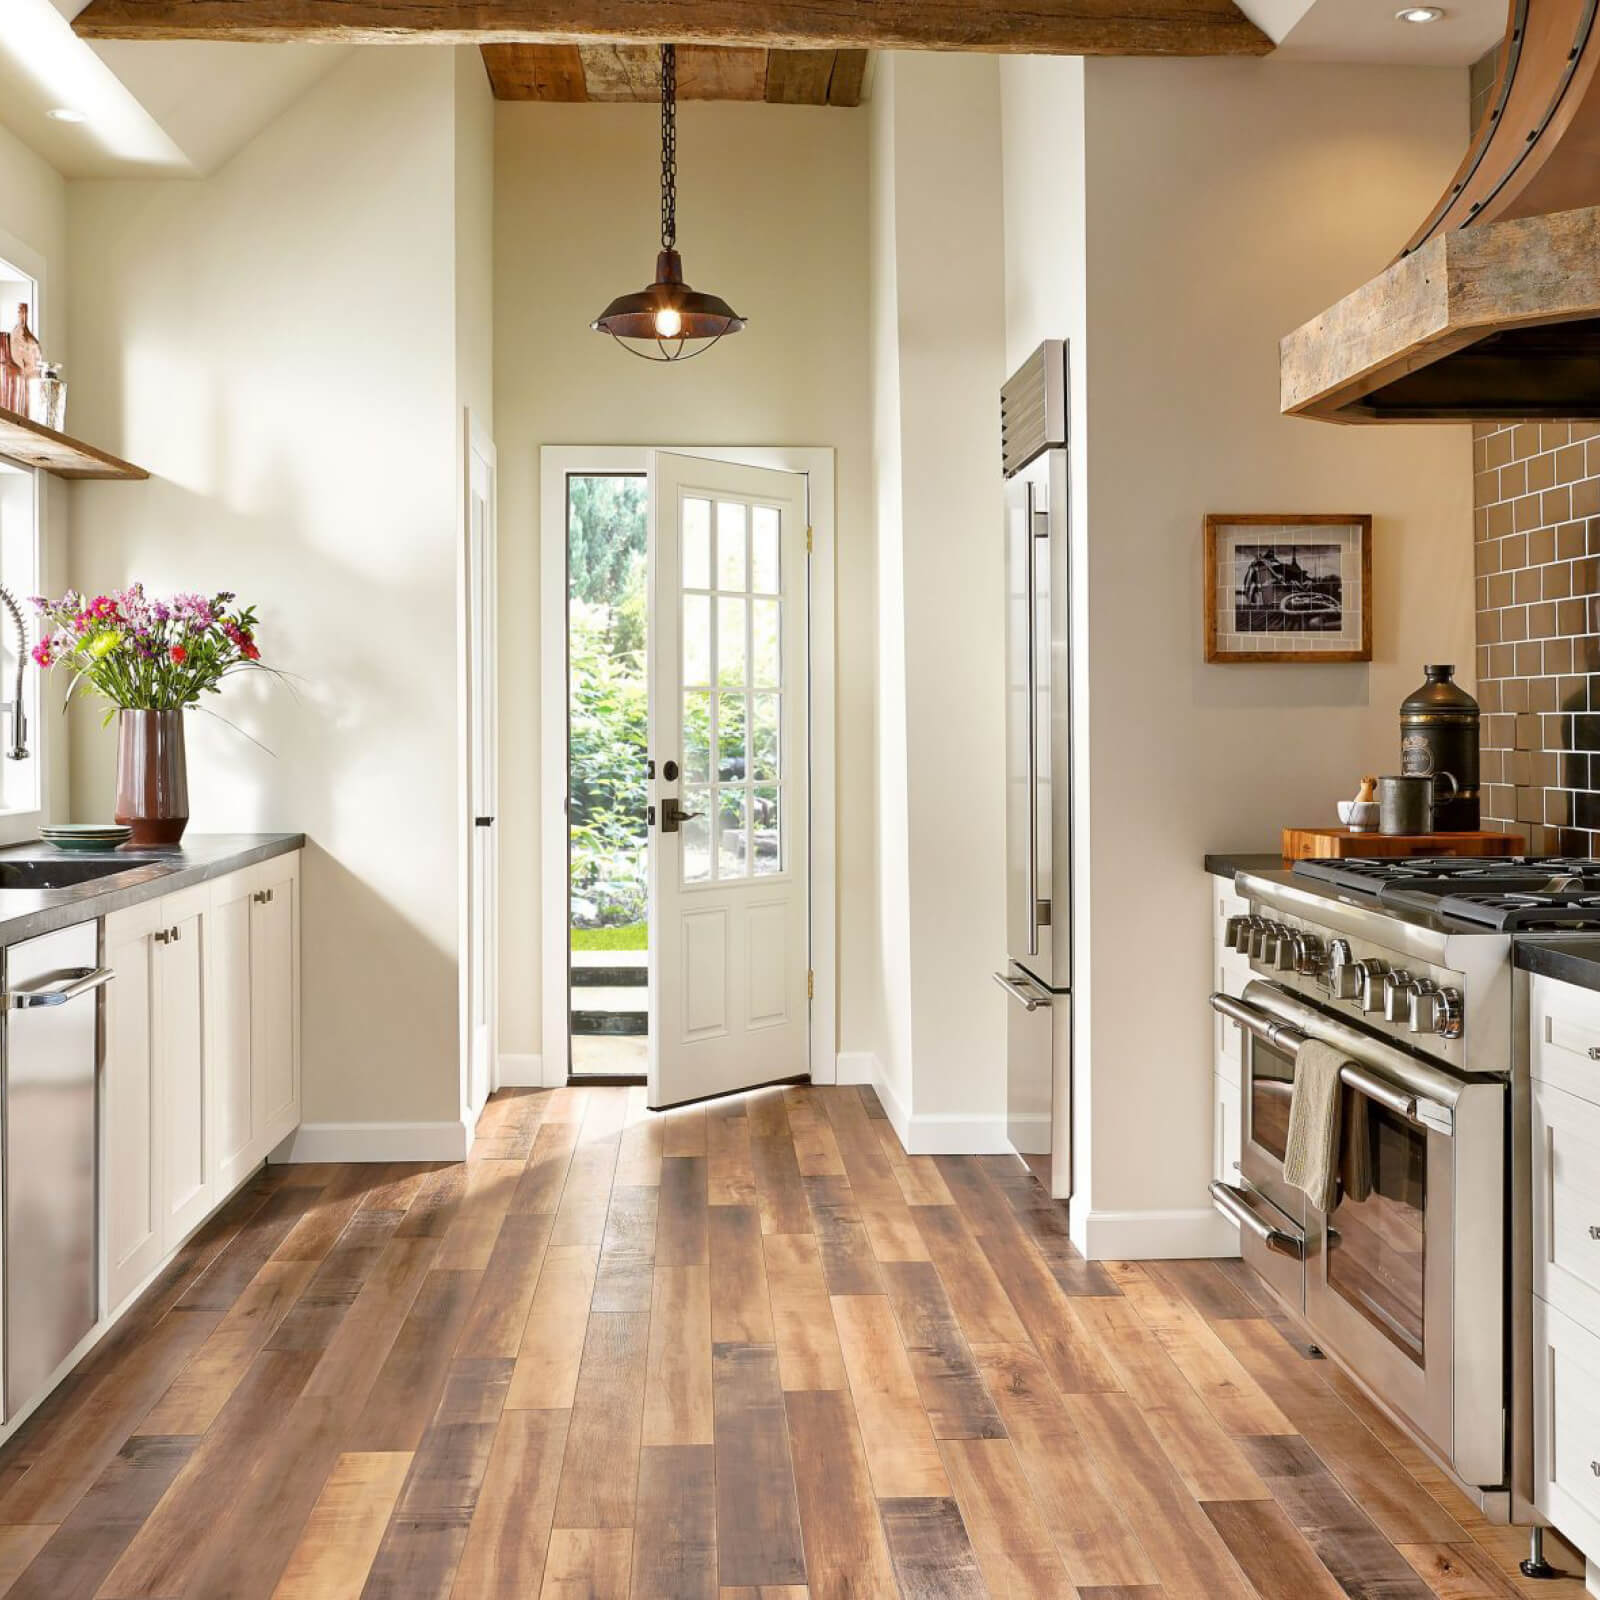 Laminate Flooring In Kitchens Waterproofing – Flooring Tips